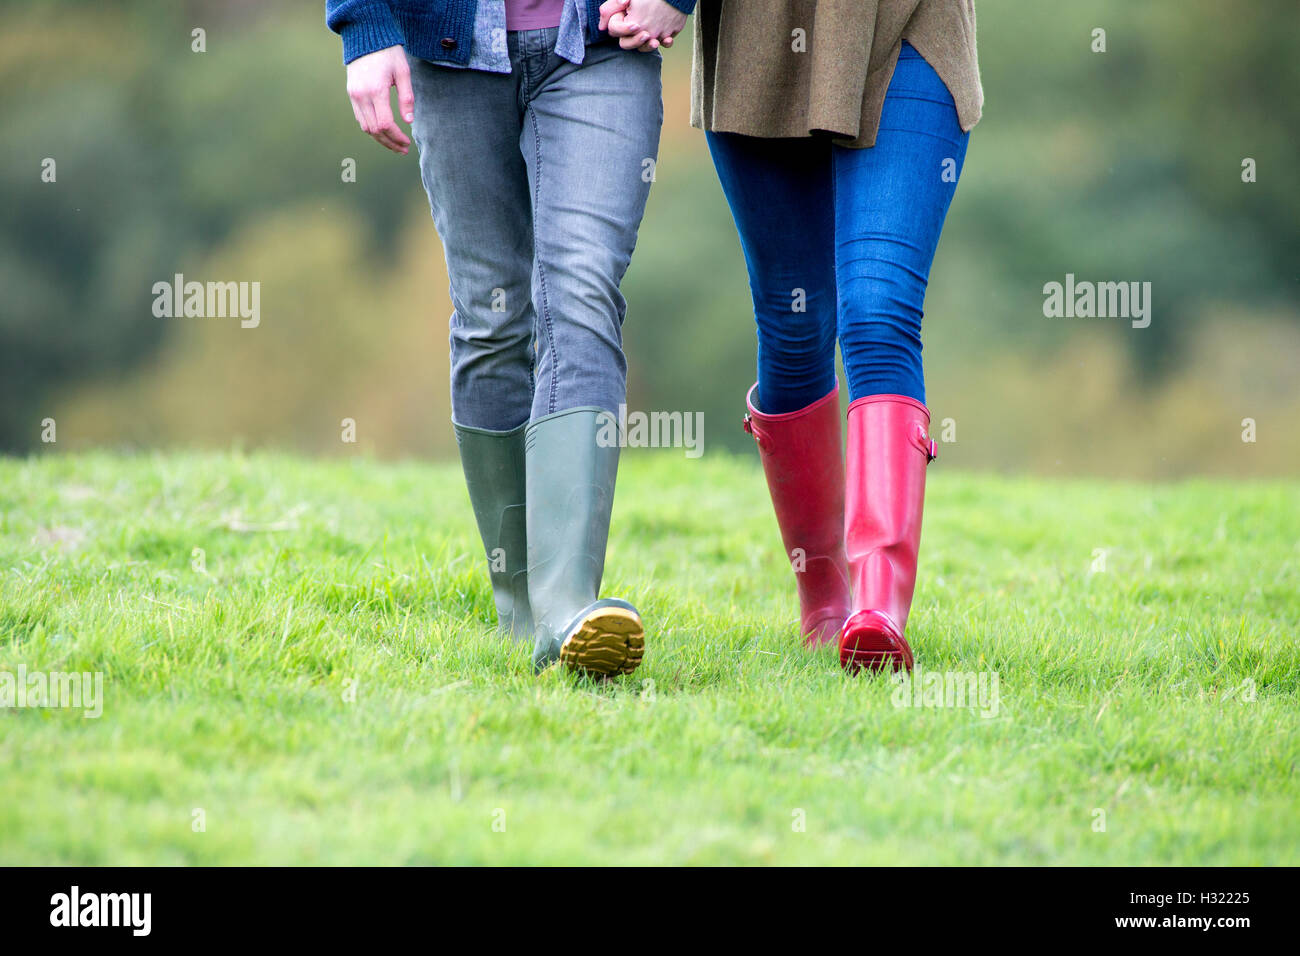 Imagen de paisaje de una joven pareja de piernas. Están tomados de la mano y caminar a través de la hierba en botas welly. Foto de stock